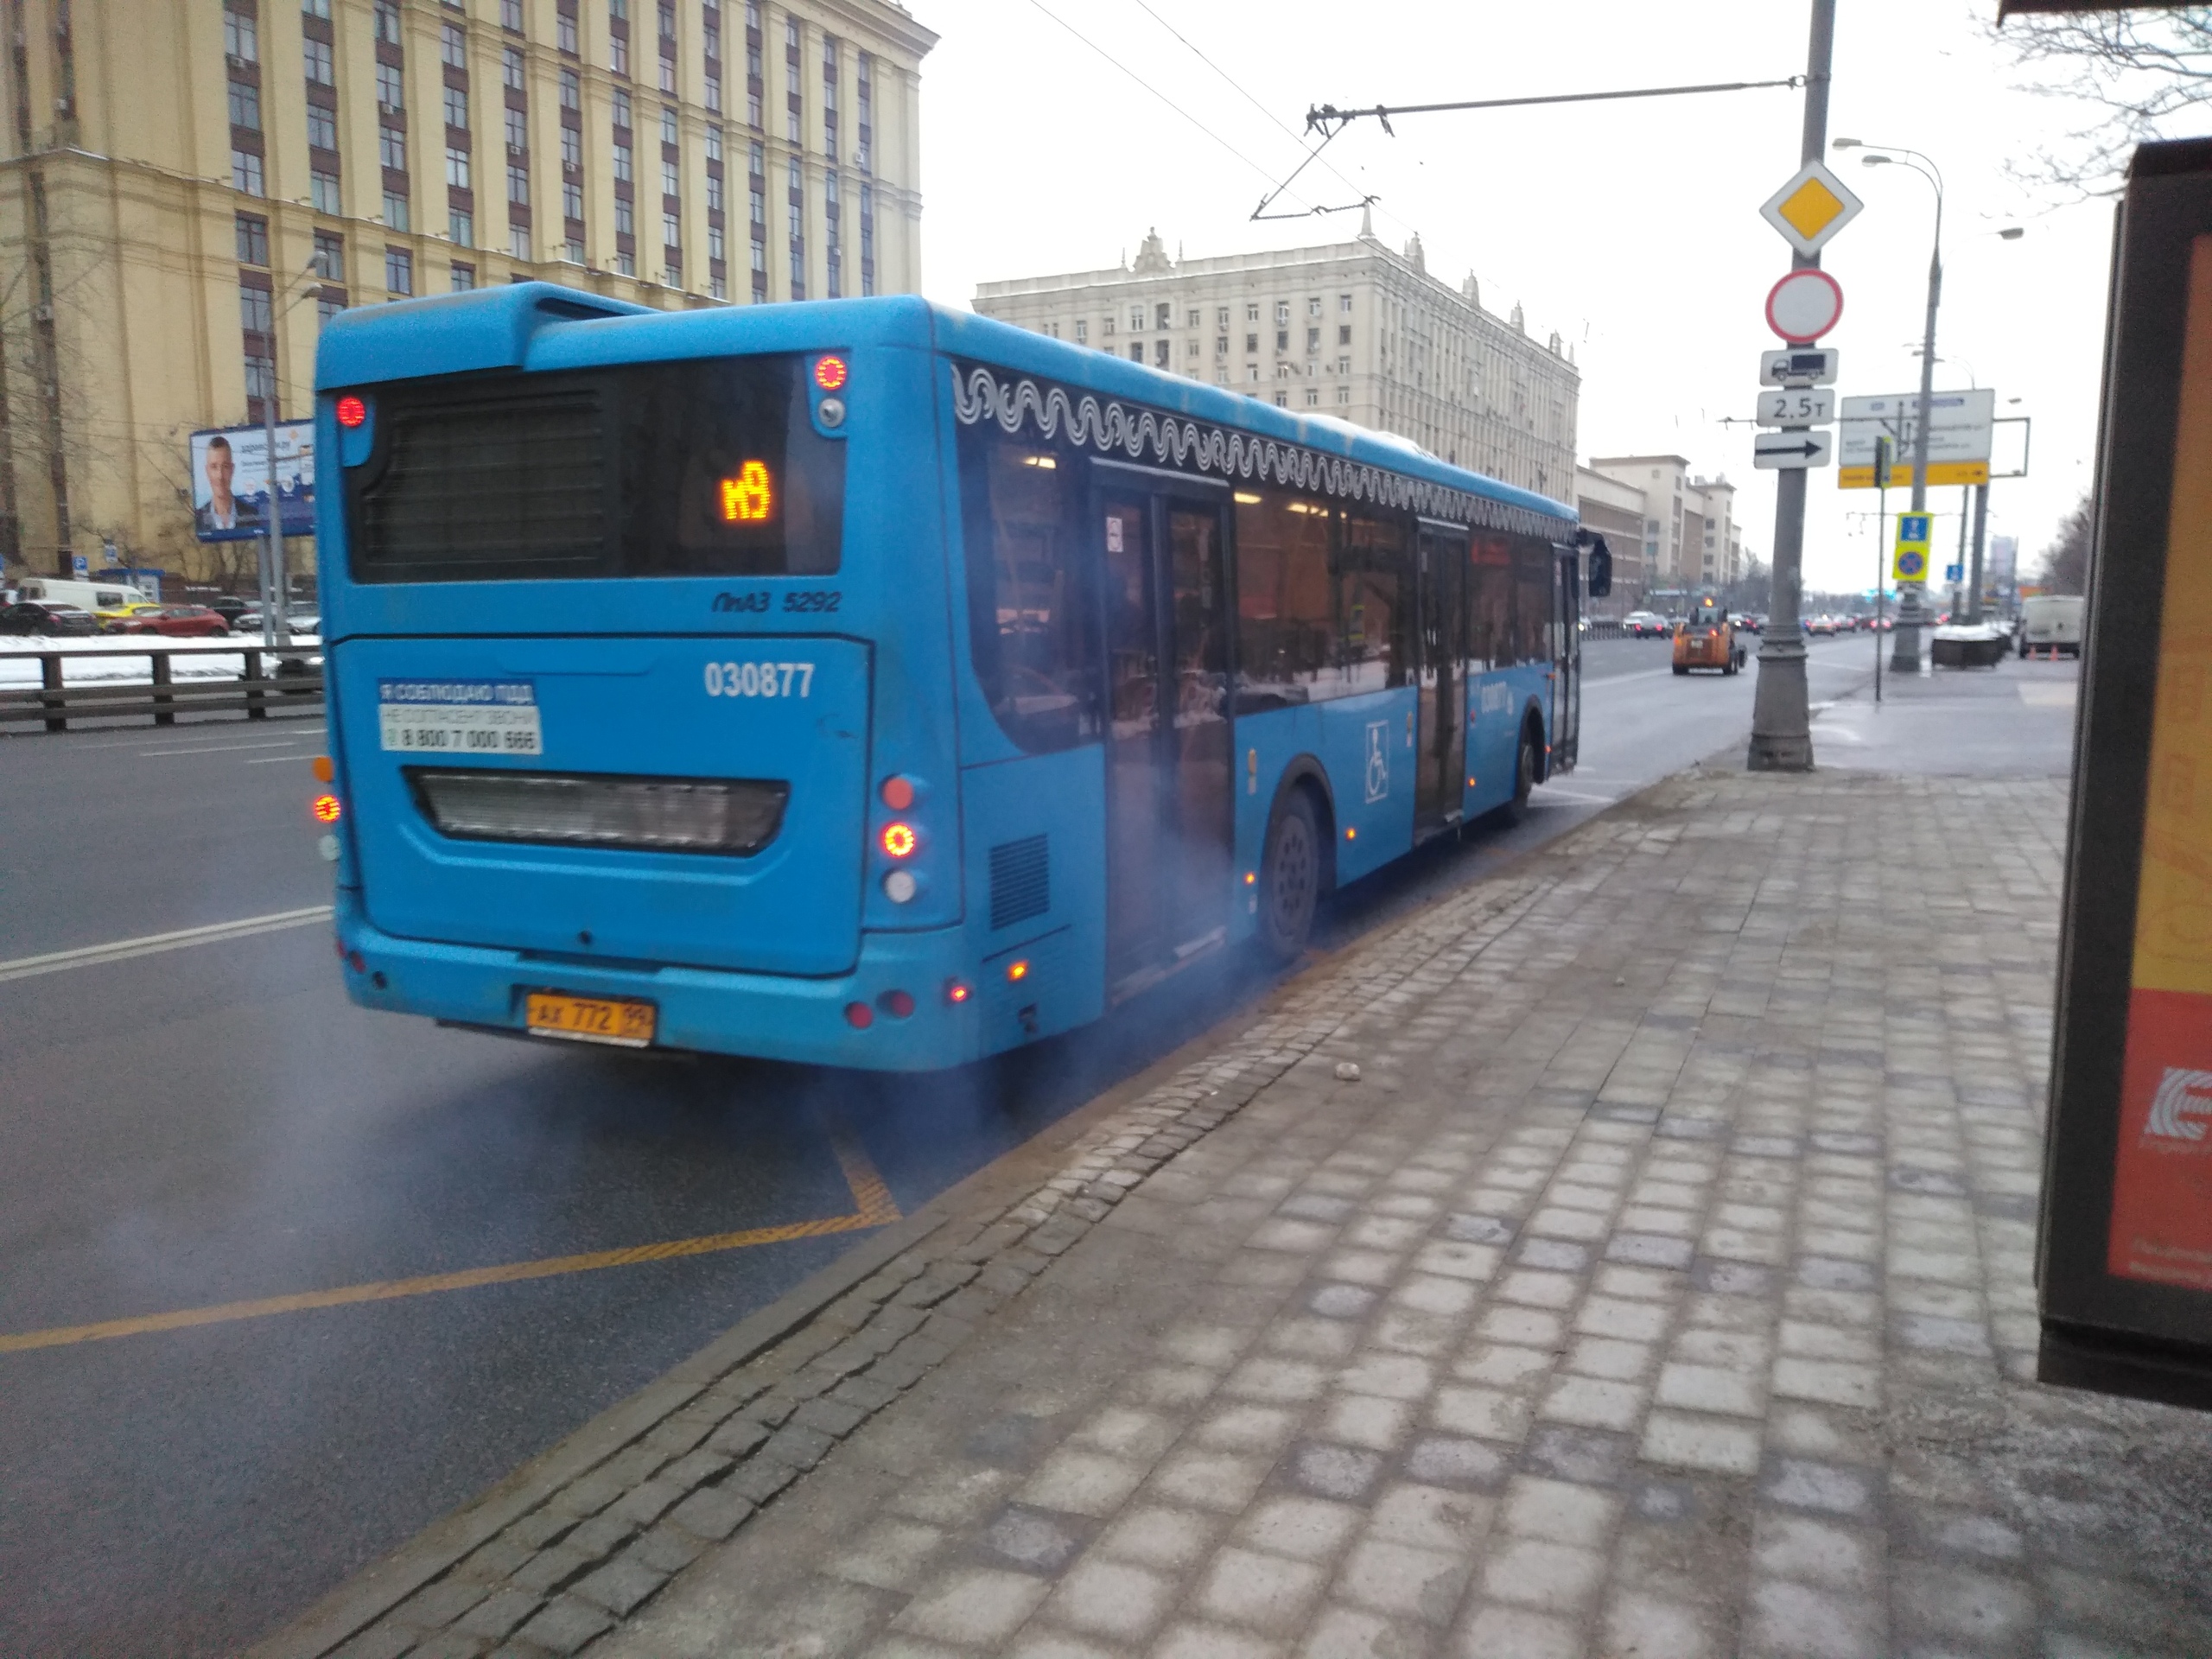 Как наземный транспорт в Москве движется в сторону экологии такой, колонны, пассажиров, претензий, очень, такое, которые, автобусы, других, запах, жалобы, начальник, автобусах, Ходил, дымить, автобуса, может, ладно, начинает, который